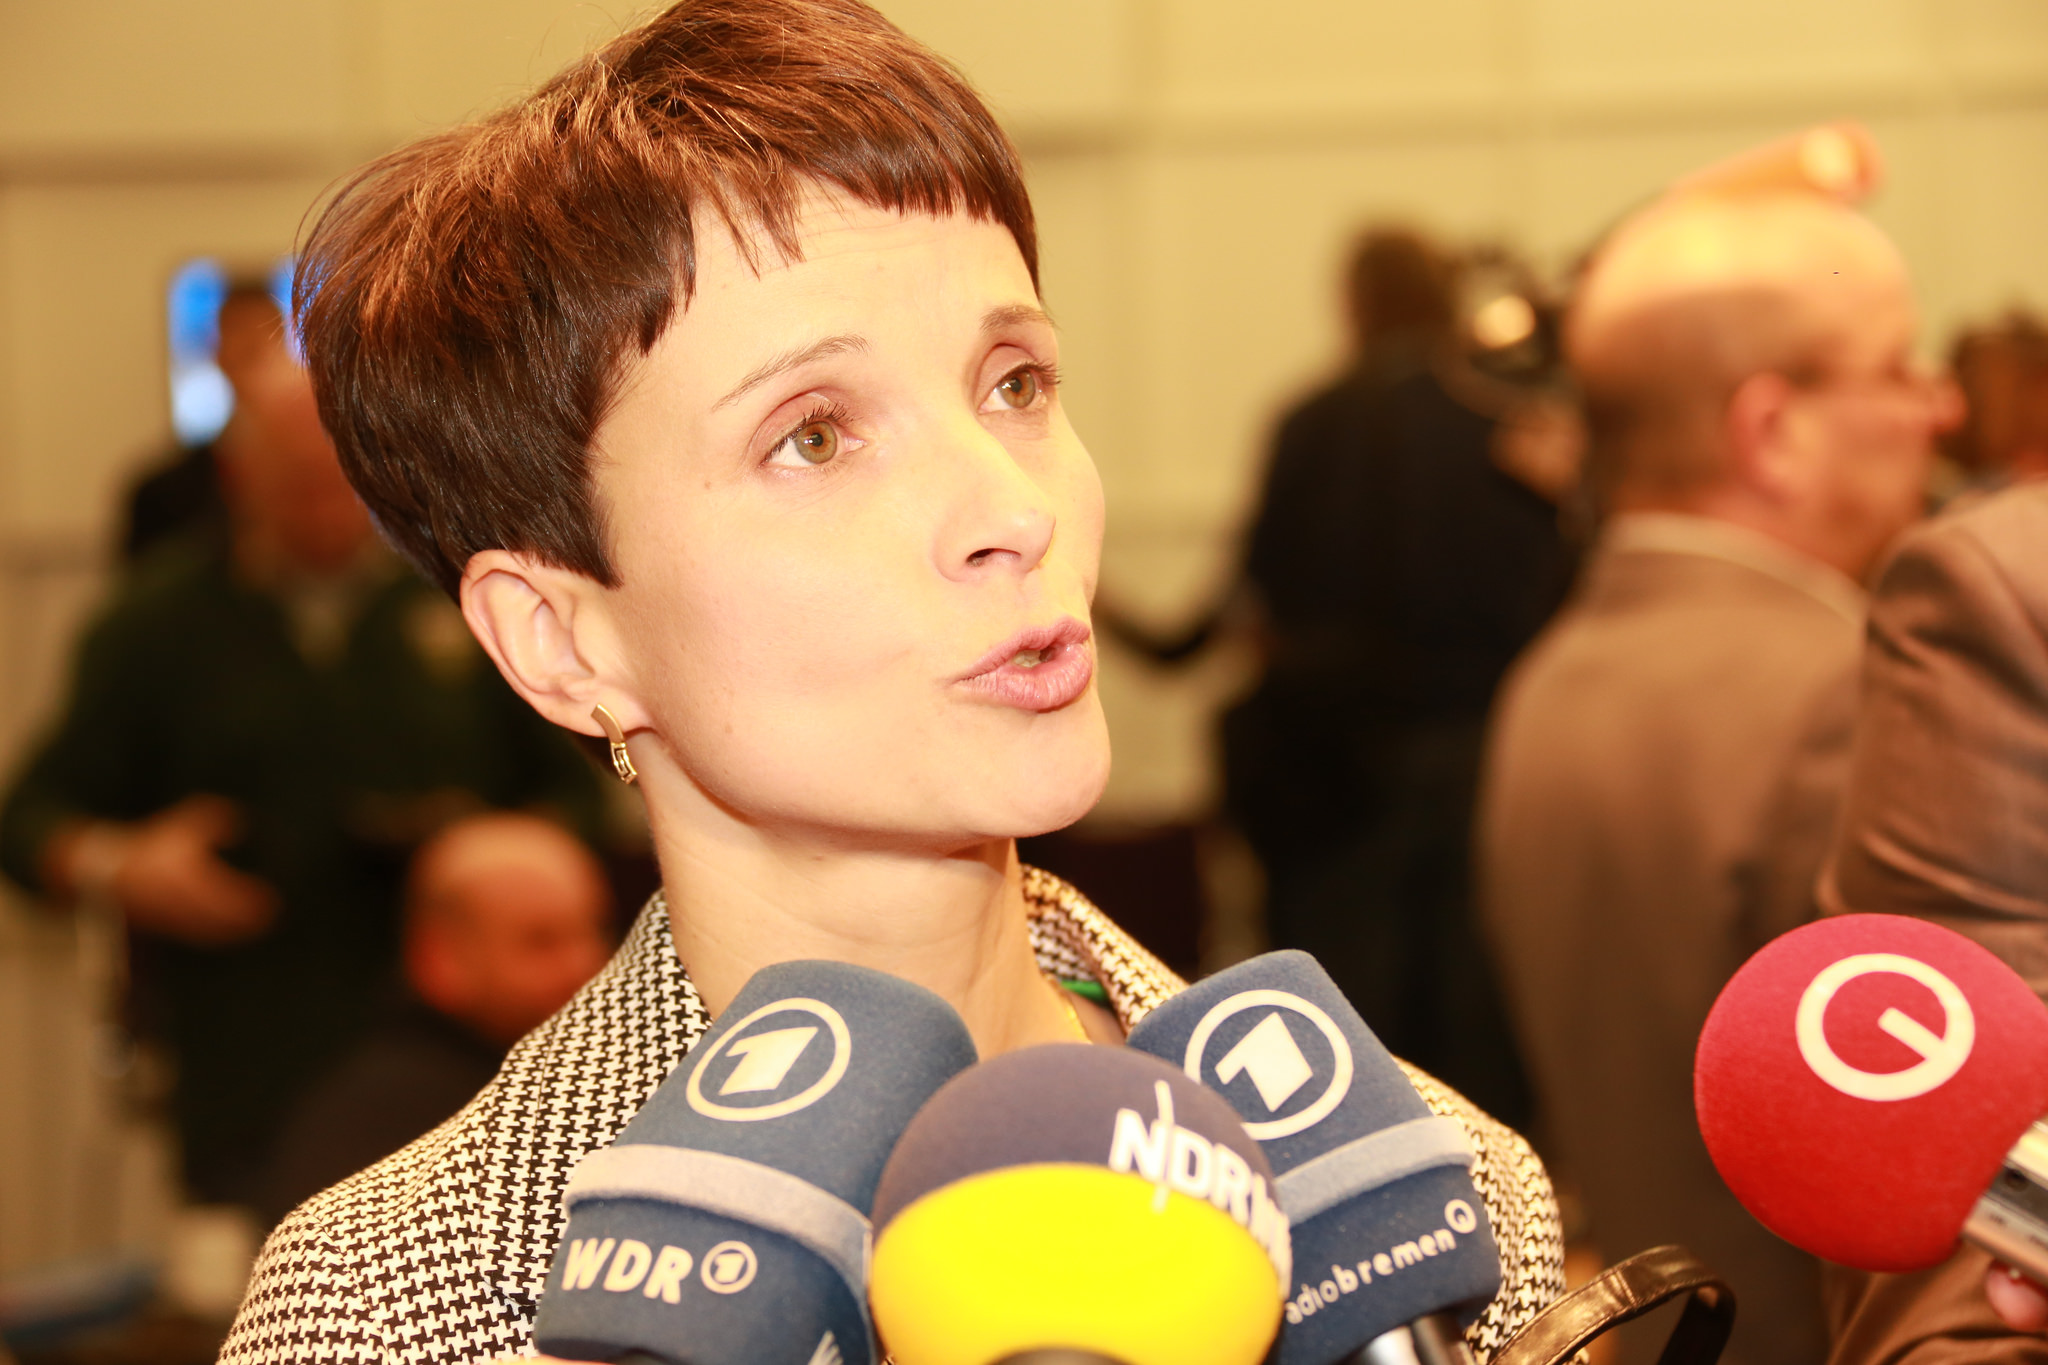 Wahlsiegerin: AfD-Chefin Frauke Petry freut sich über drei Landtagswahlen mit zweistelligen Ergebnissen für ihre Partei (Archivfoto). Foto: Metropolico.org / Flickr (CC BY-SA 2.0) 